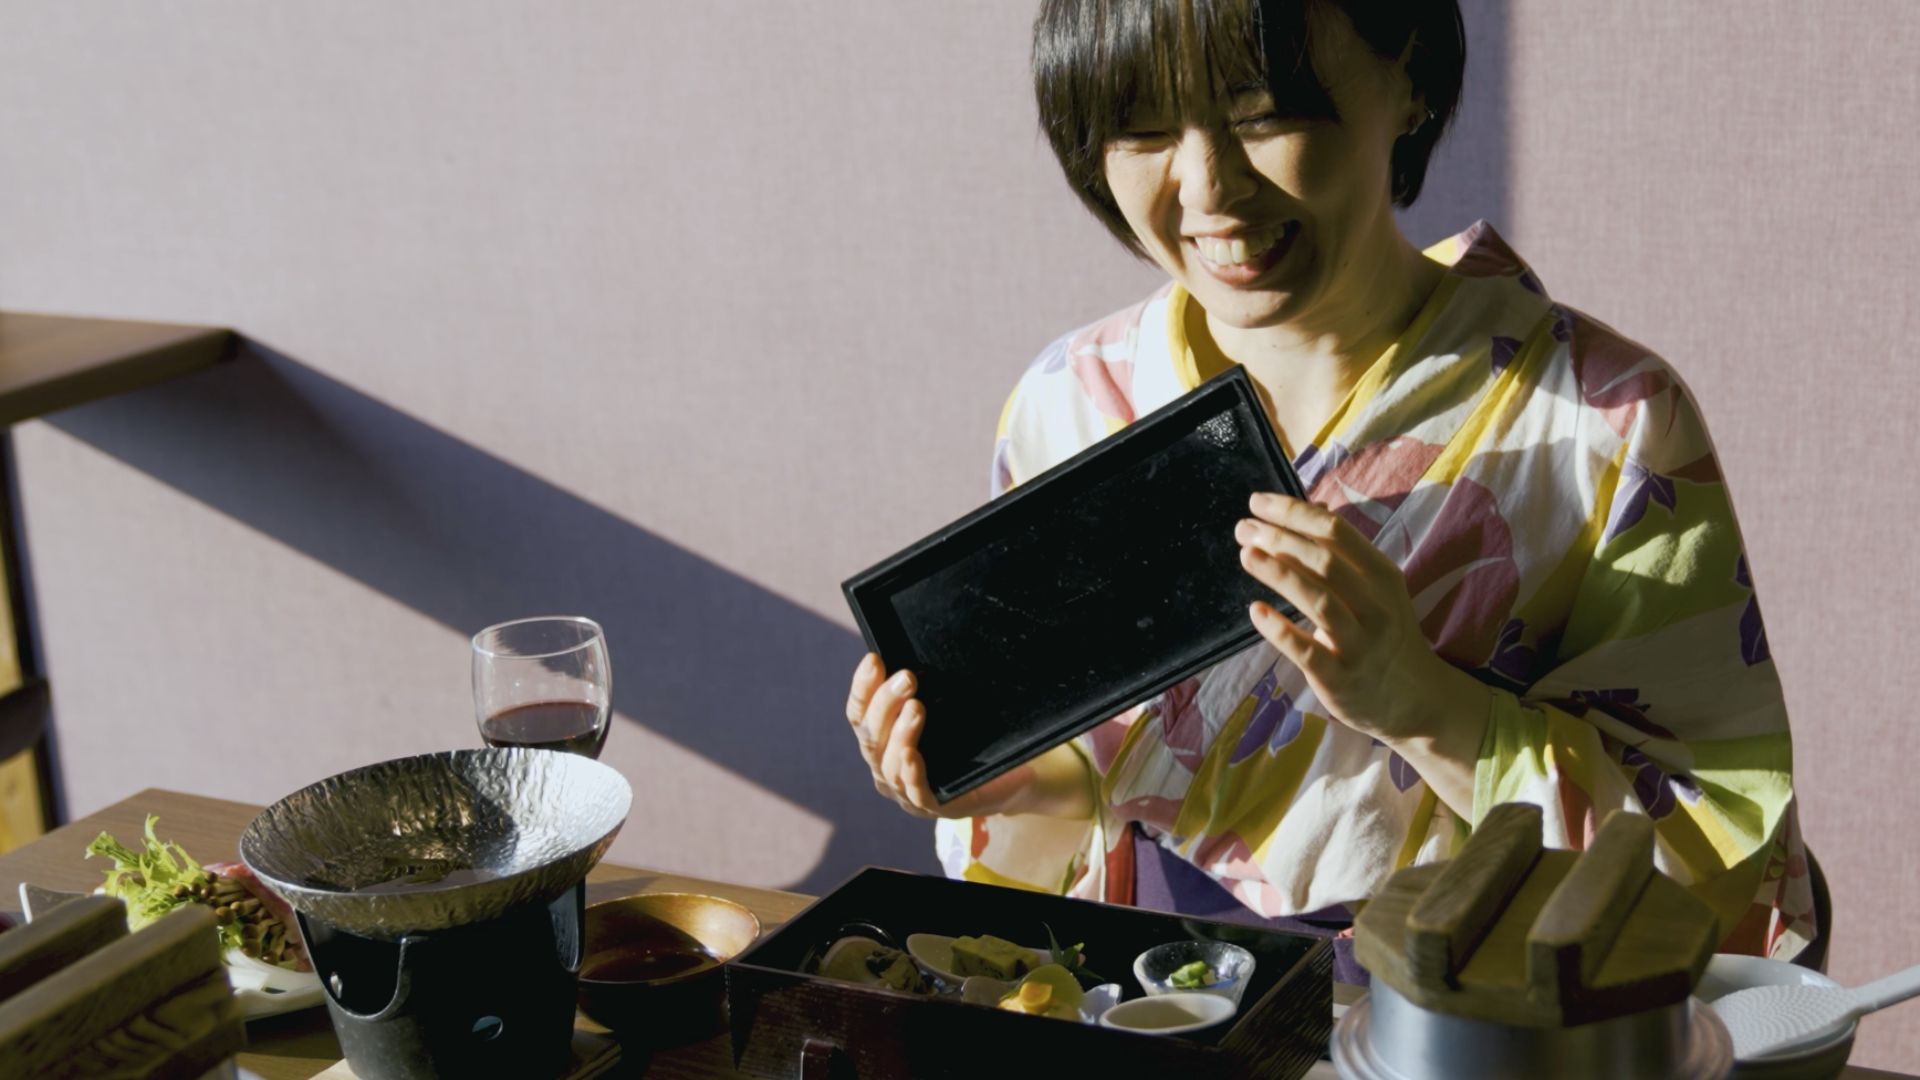 全日本料理コンクール日本全職業調理師協会会長賞受賞。 当館精鋭の料理人によるお食事をご堪能下さい。